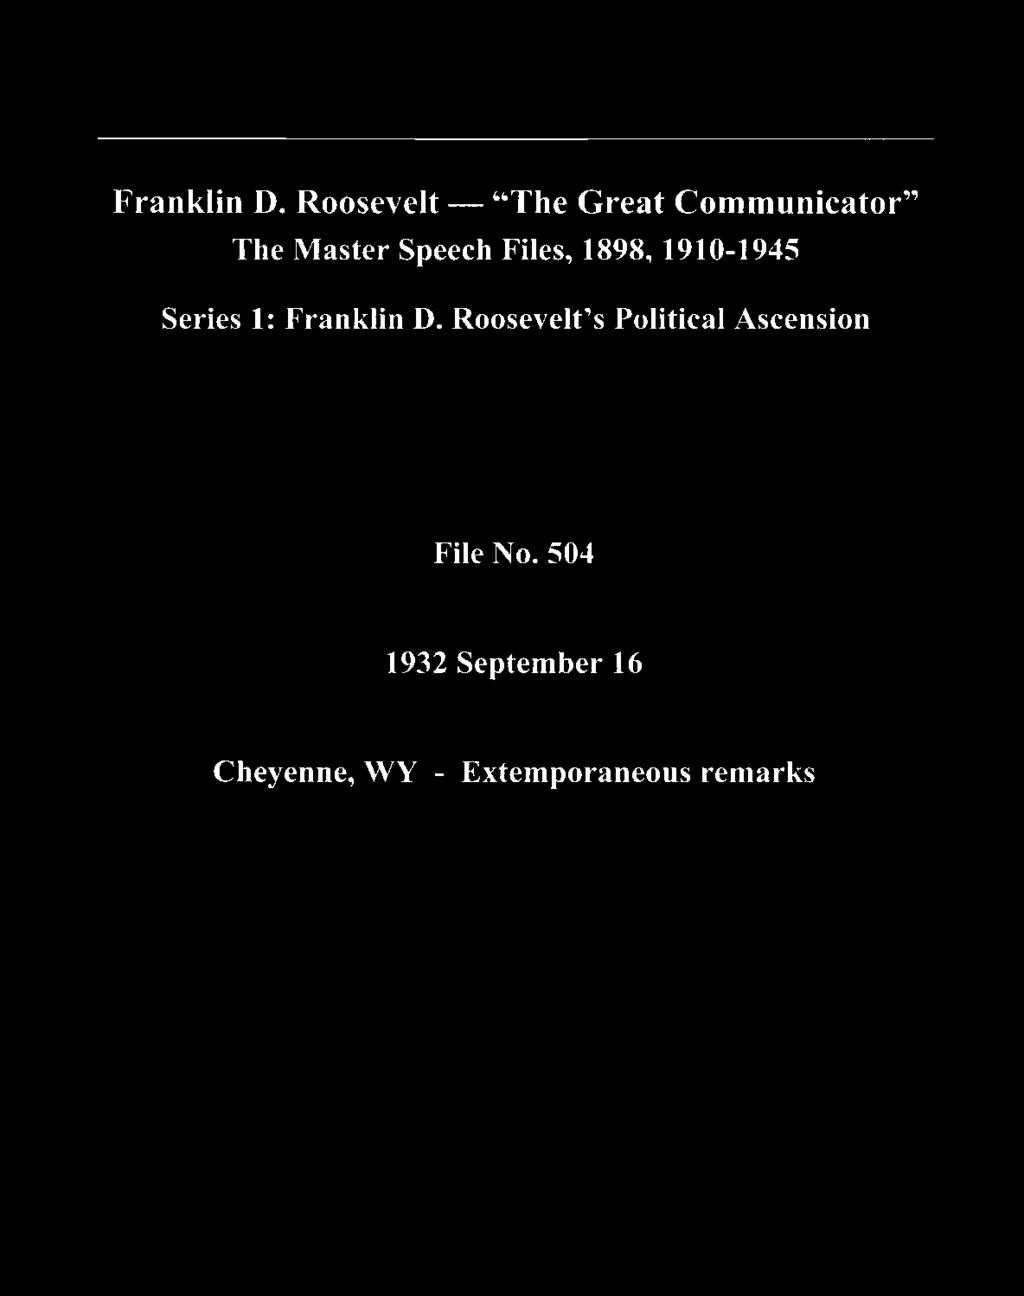 Speech Files, 1898, 1910-1945 Series 1:  Roosevelt's